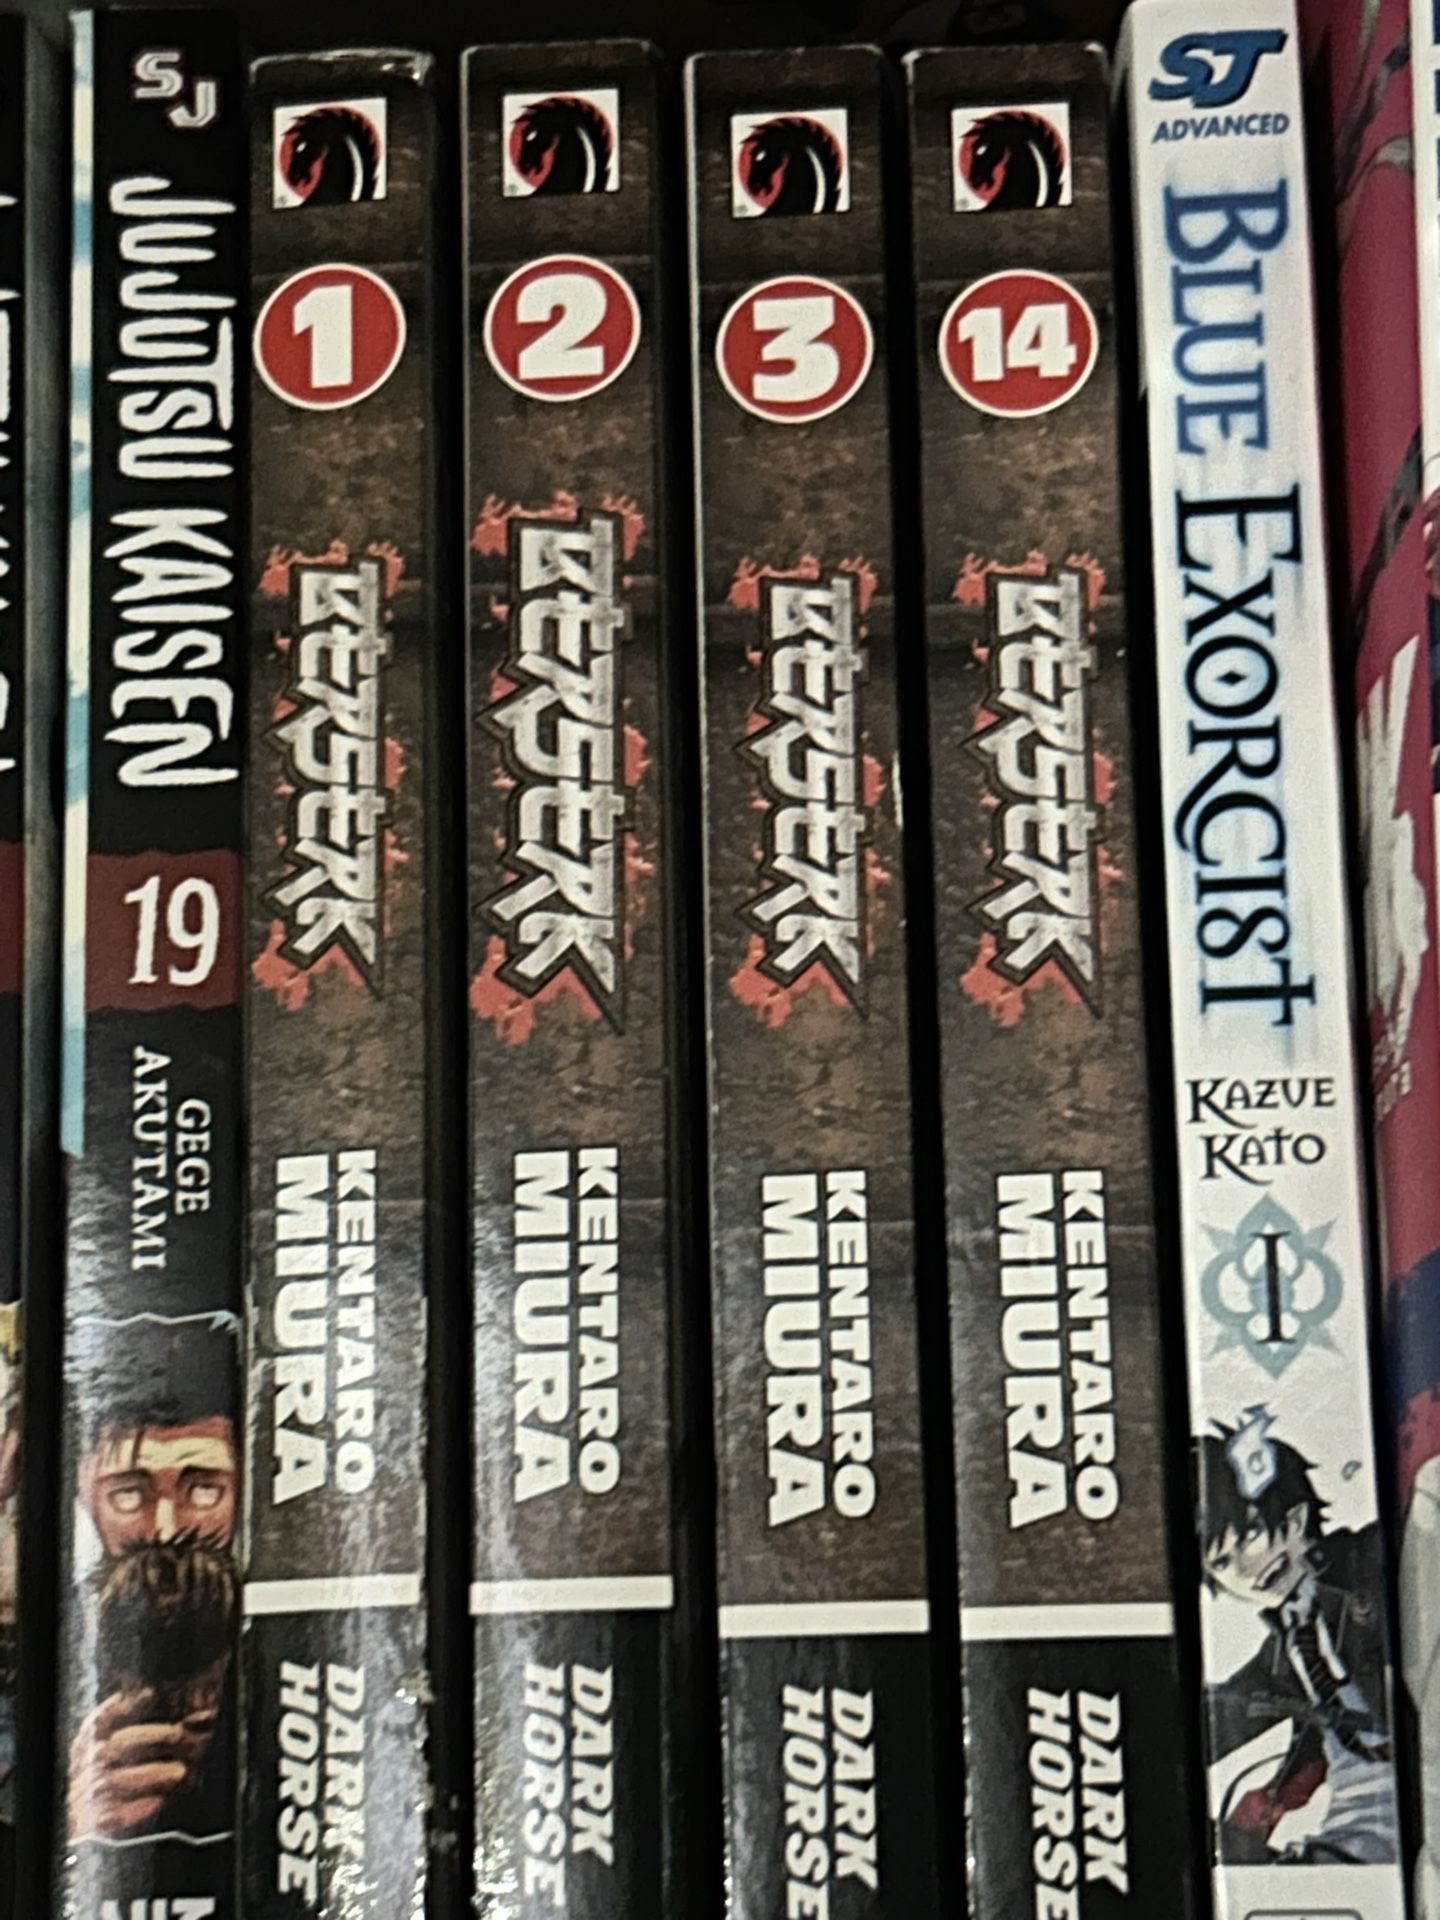 Berserk Manga Volumes 1-3, 14